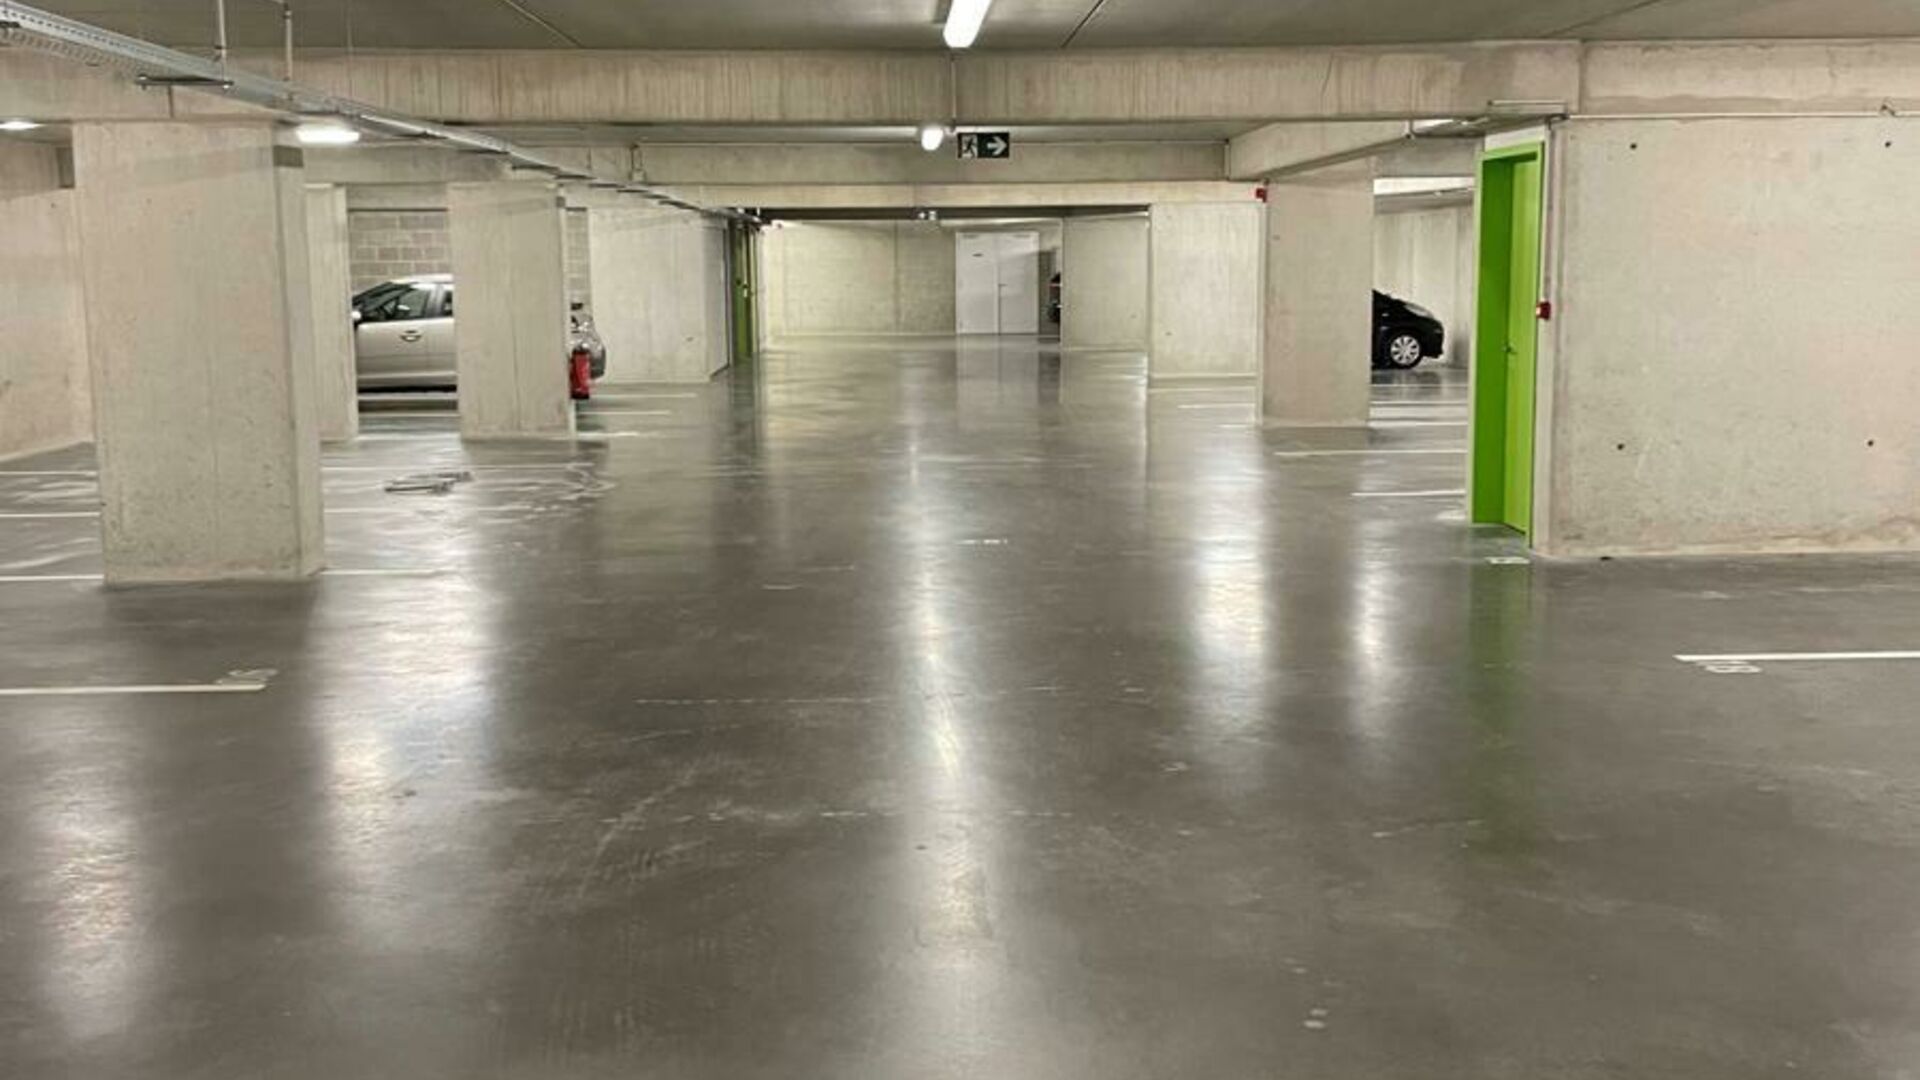 In residentie 'Woods' aan de Tiensesteenweg verhuren wij 3 ondergrondse autostaanplaatsen. De parking is afgesloten en toegankelijk met een automatische poort. Goede verbinding naar Leuven centrum en het station. Parkings zijn onmiddellijk beschikbaar.   